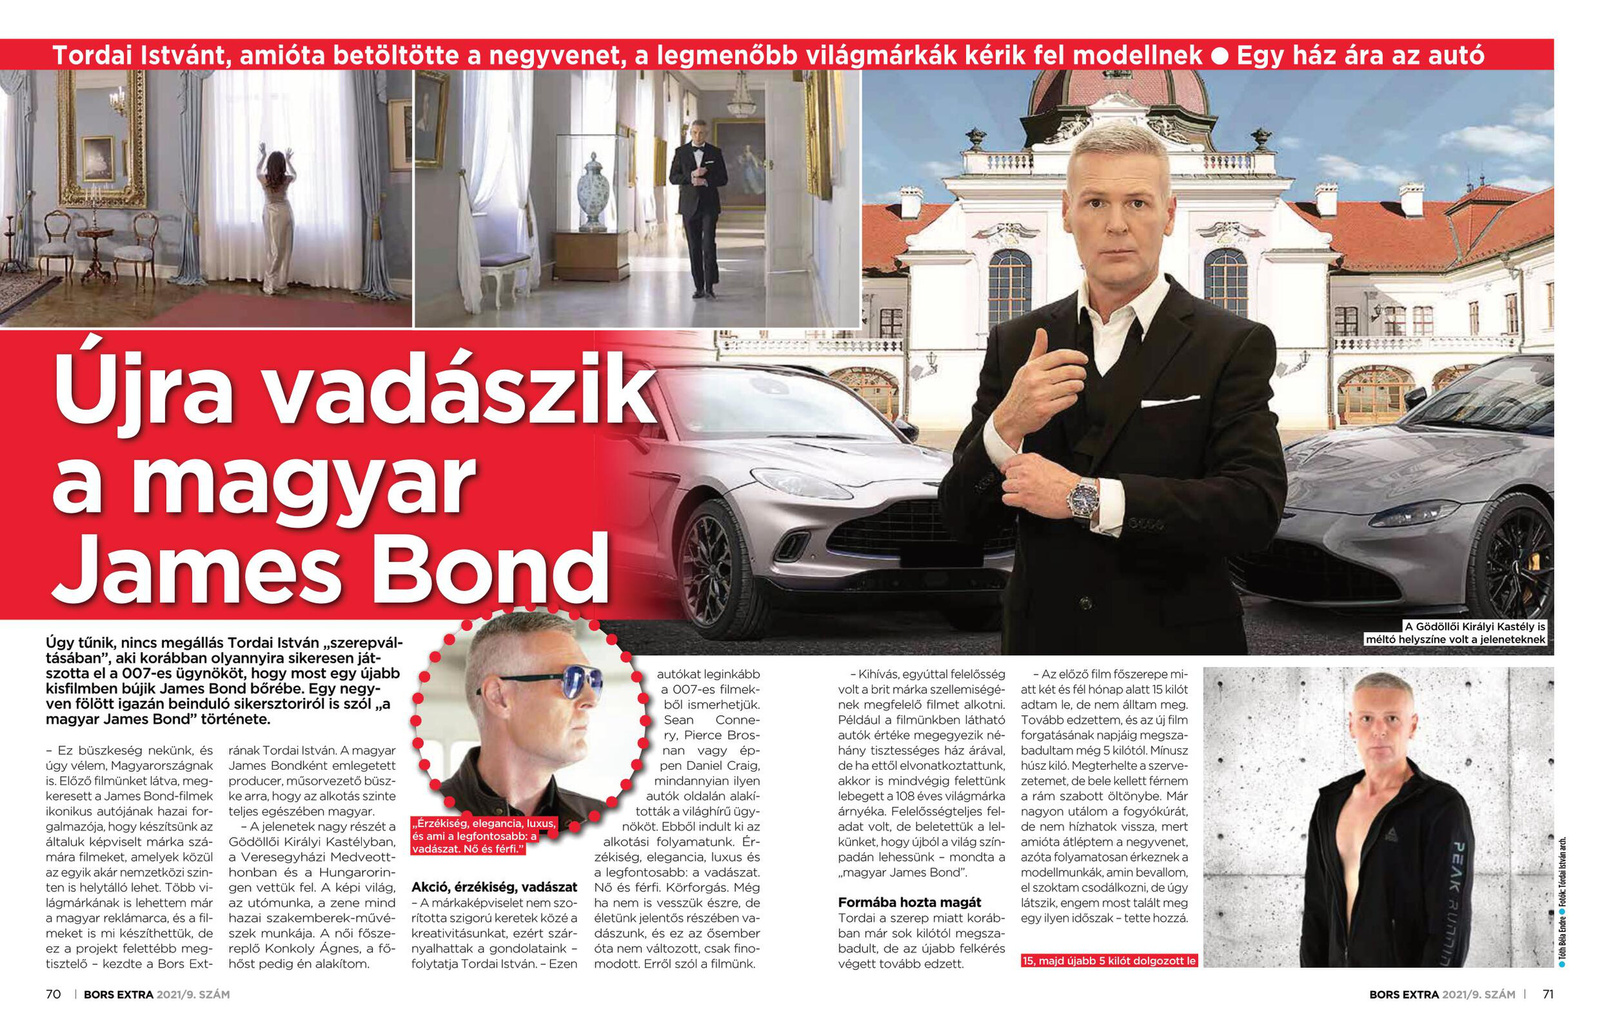 Tordai István a magyar James Bond (Bors Extra 2021. november)